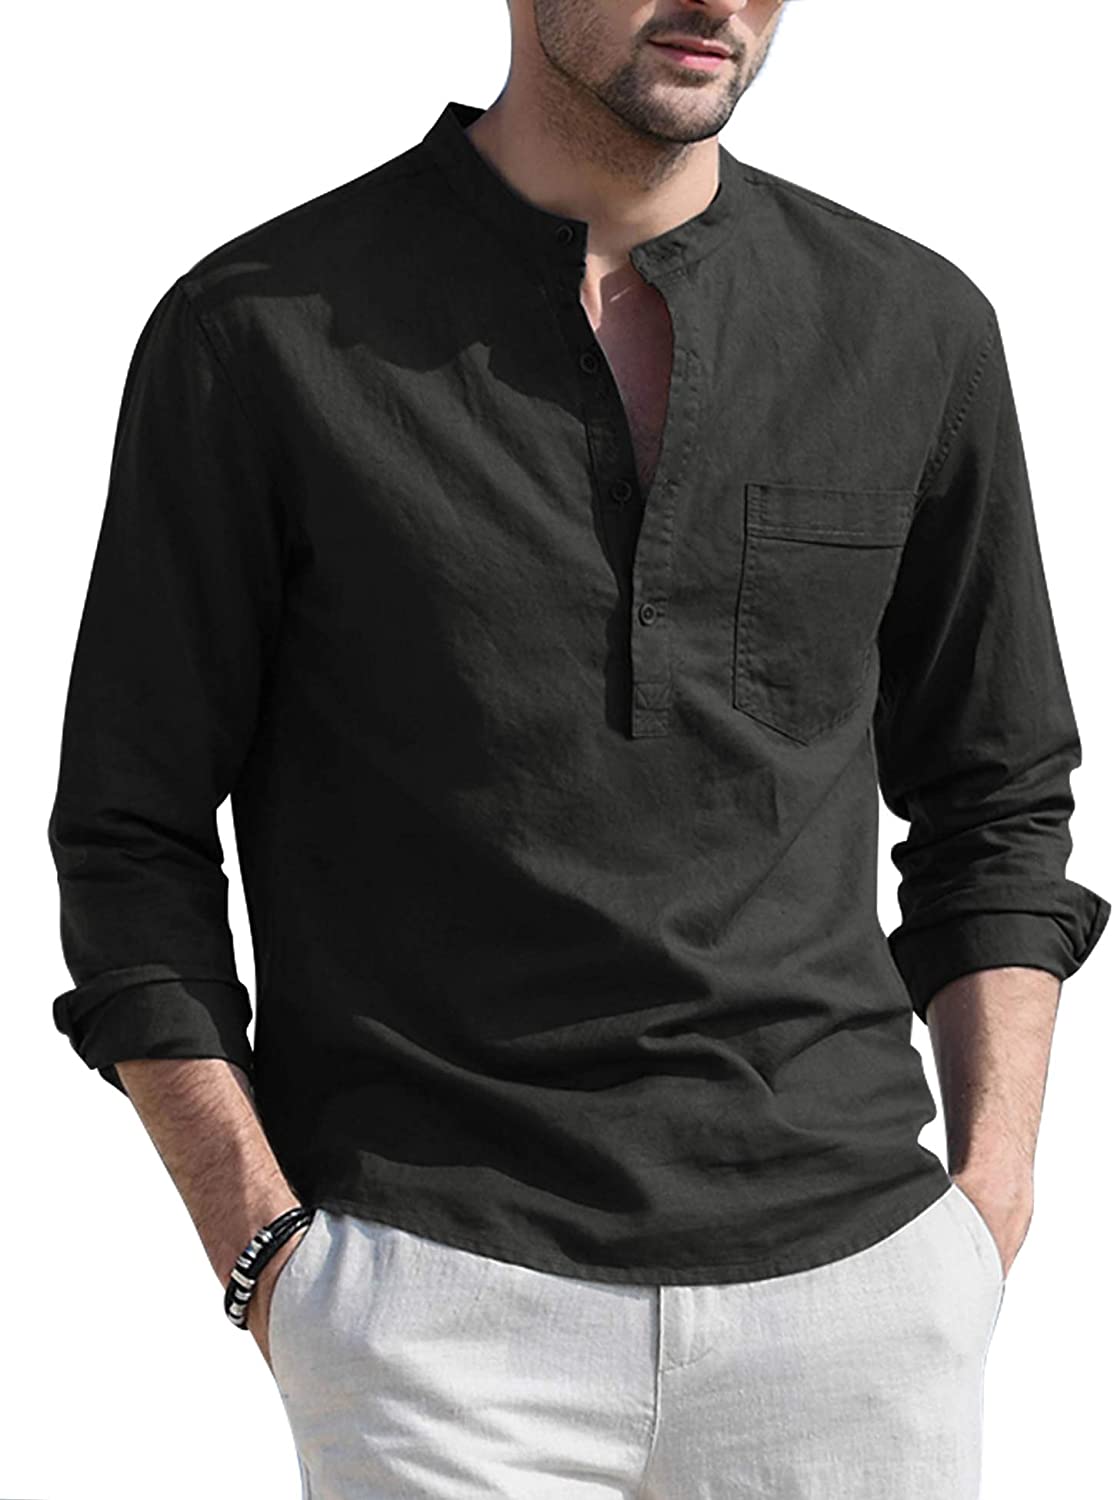 COOFANDY Mens Cotton Linen Print Mandarin Collar Long Sleeve Button Down Shirt